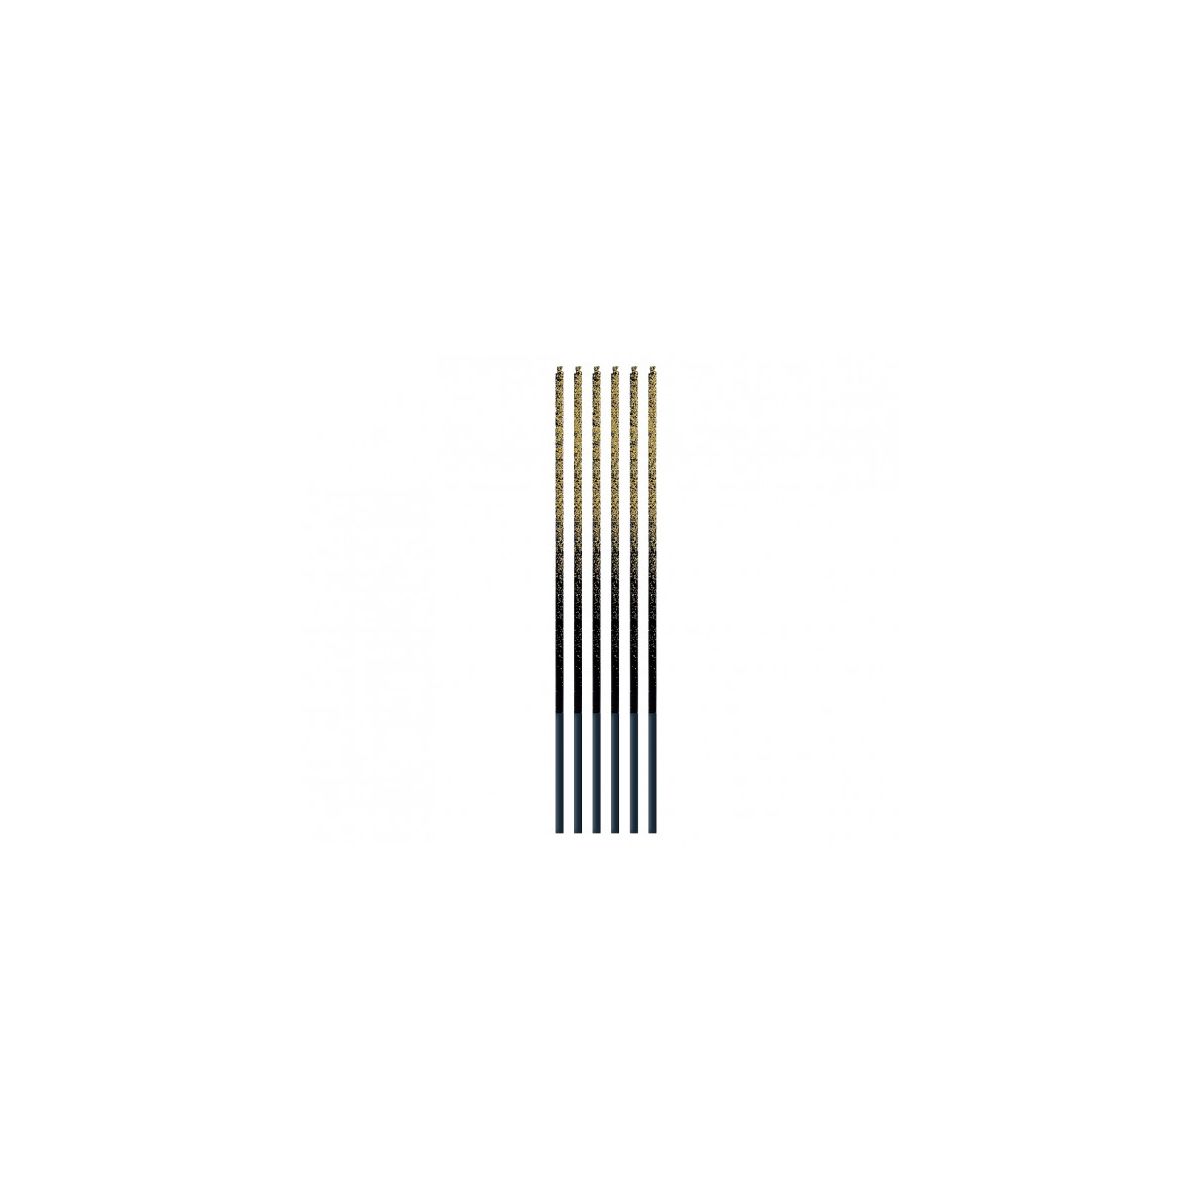 Świeczka urodzinowa Ombre, złoty brokat, 3x3x170mm, 6 szt. Godan (7C-SOZB)